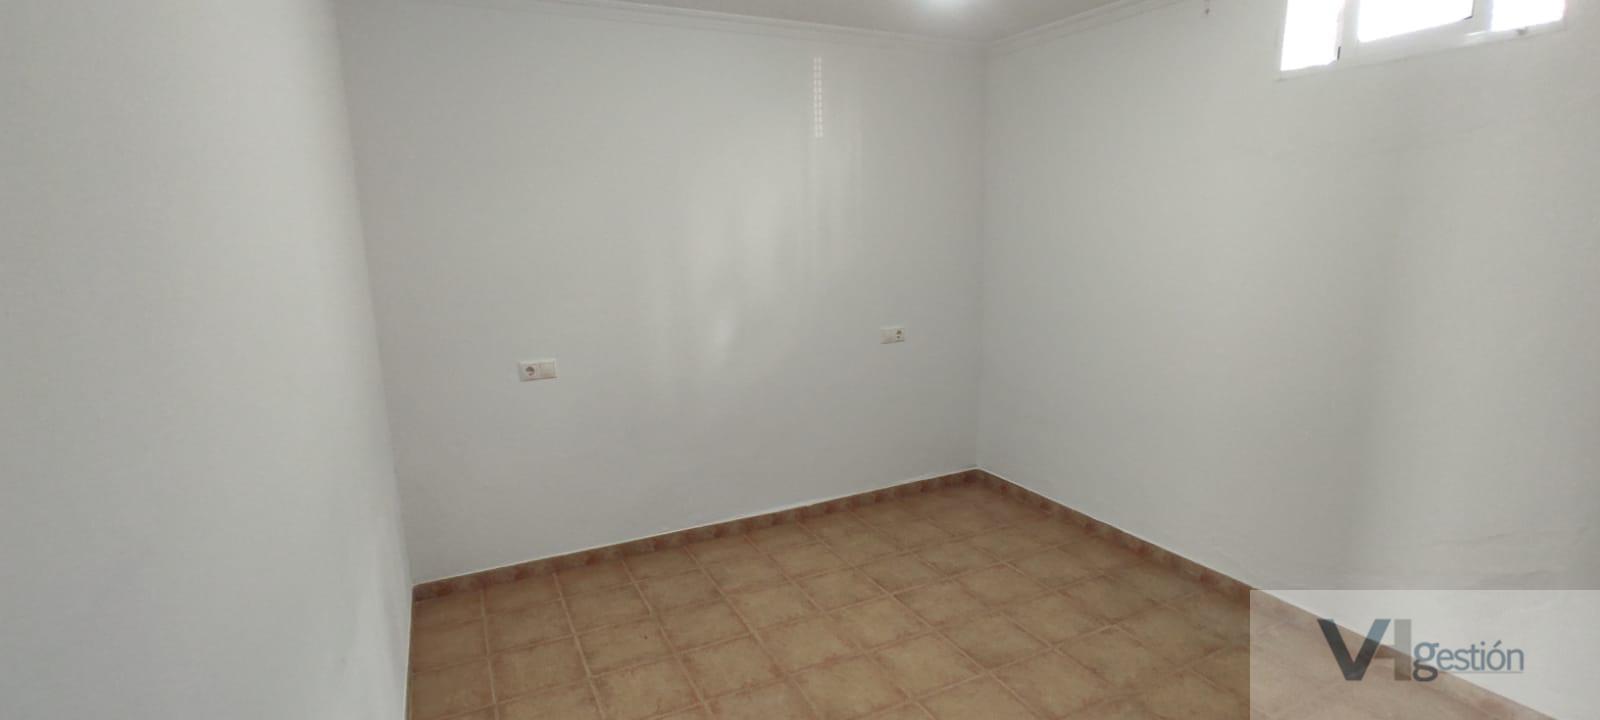 For sale of house in Prado del Rey